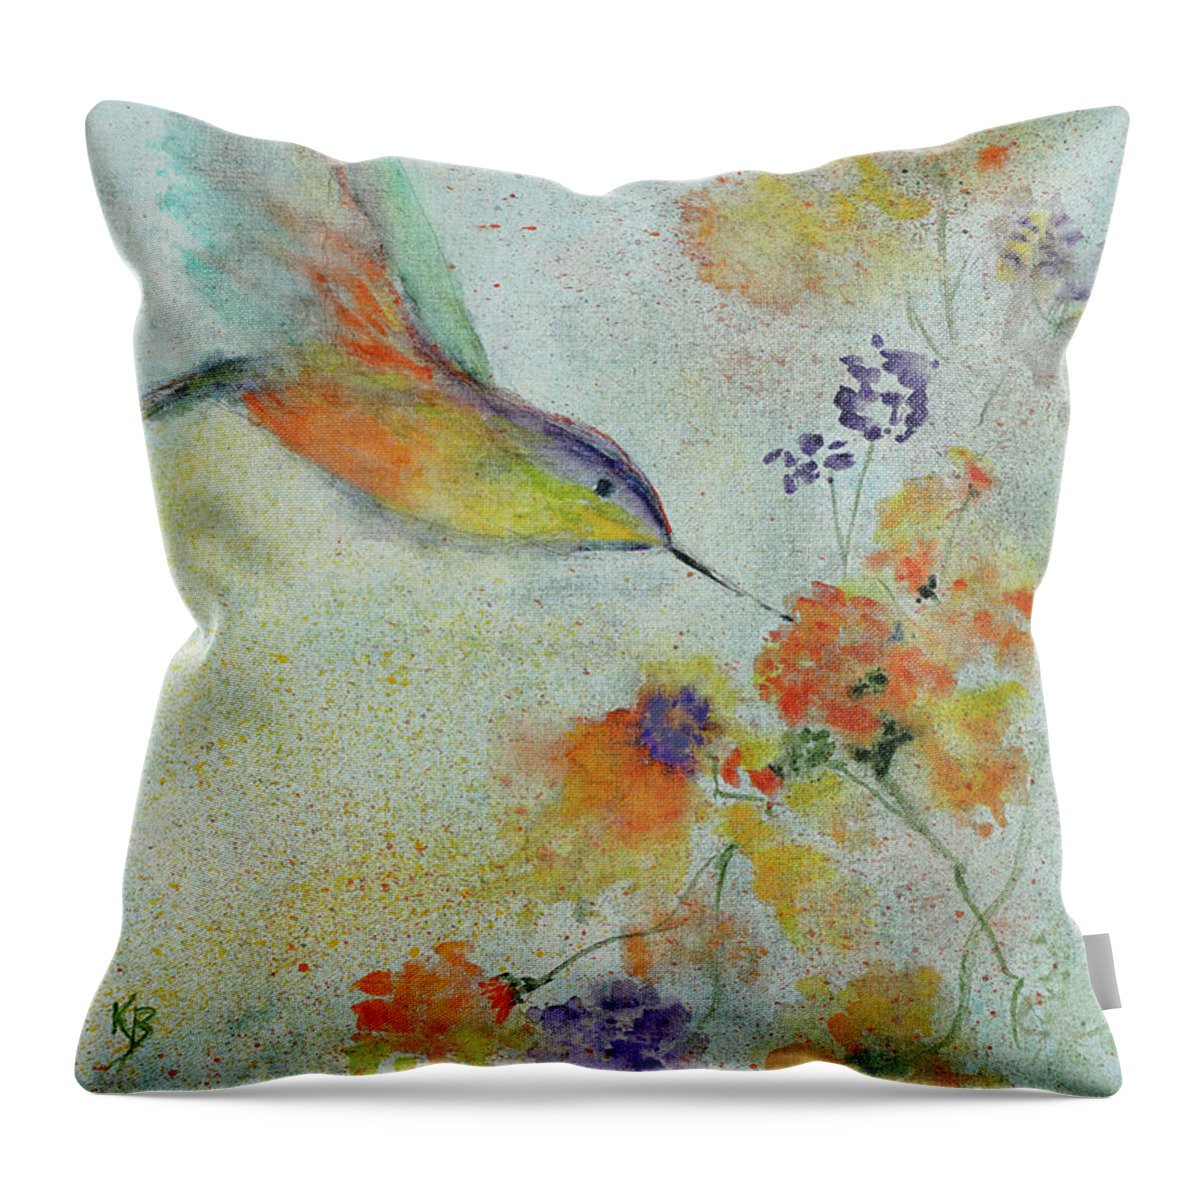 Bird Throw Pillow featuring the painting Hummingbird by Karen Fleschler